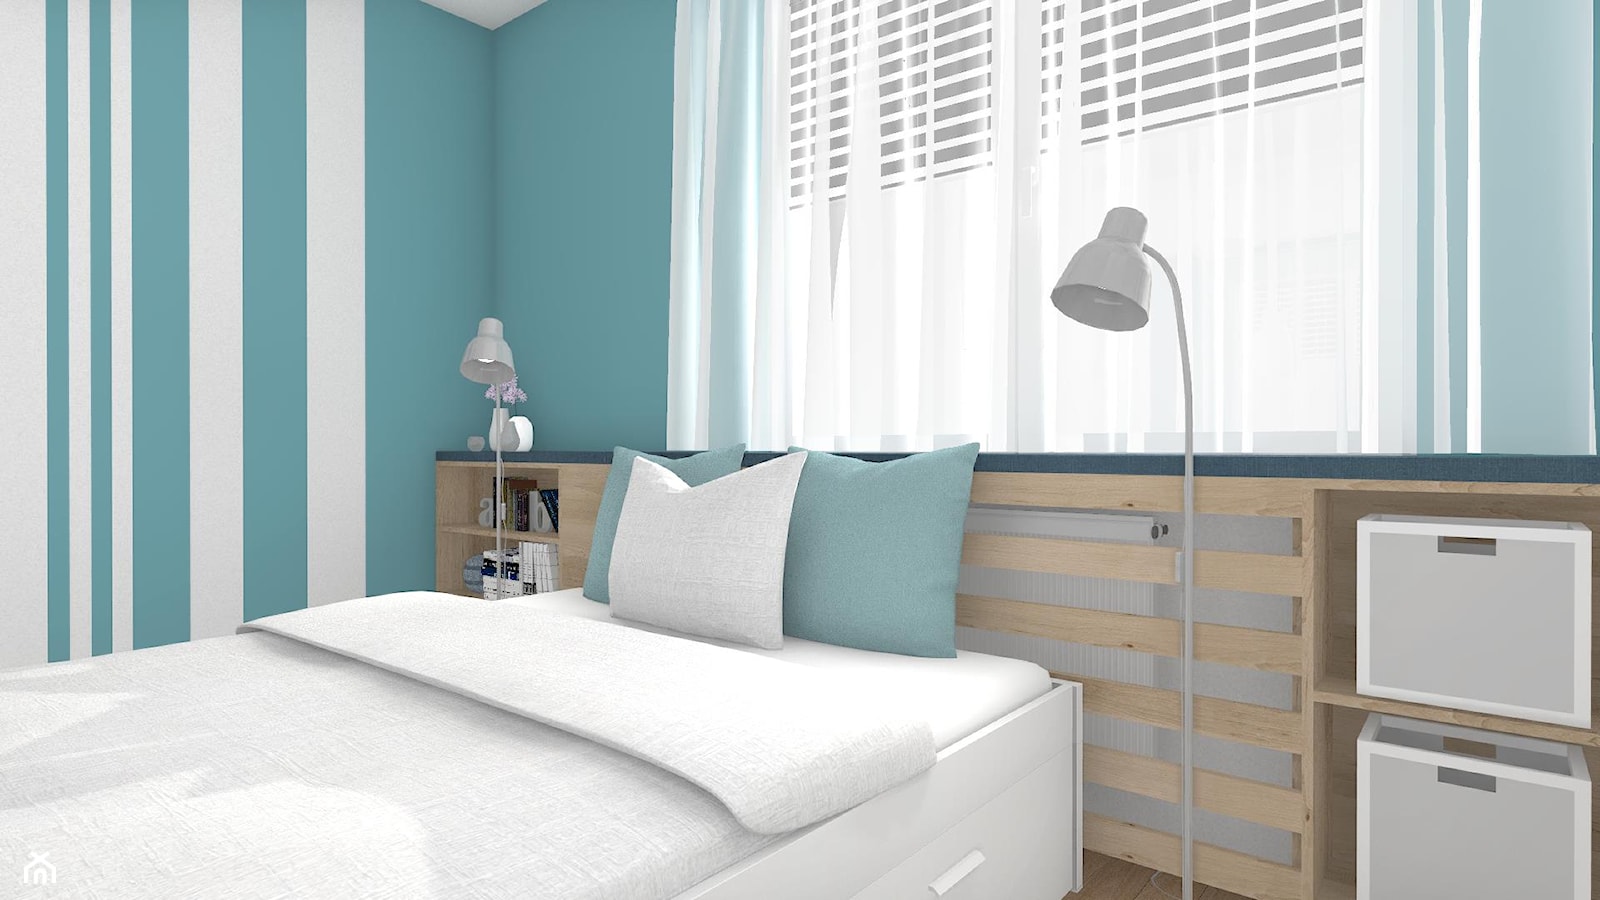 Pastelowo - Mała biała niebieska sypialnia, styl skandynawski - zdjęcie od Justyna Lewicka Design - Homebook